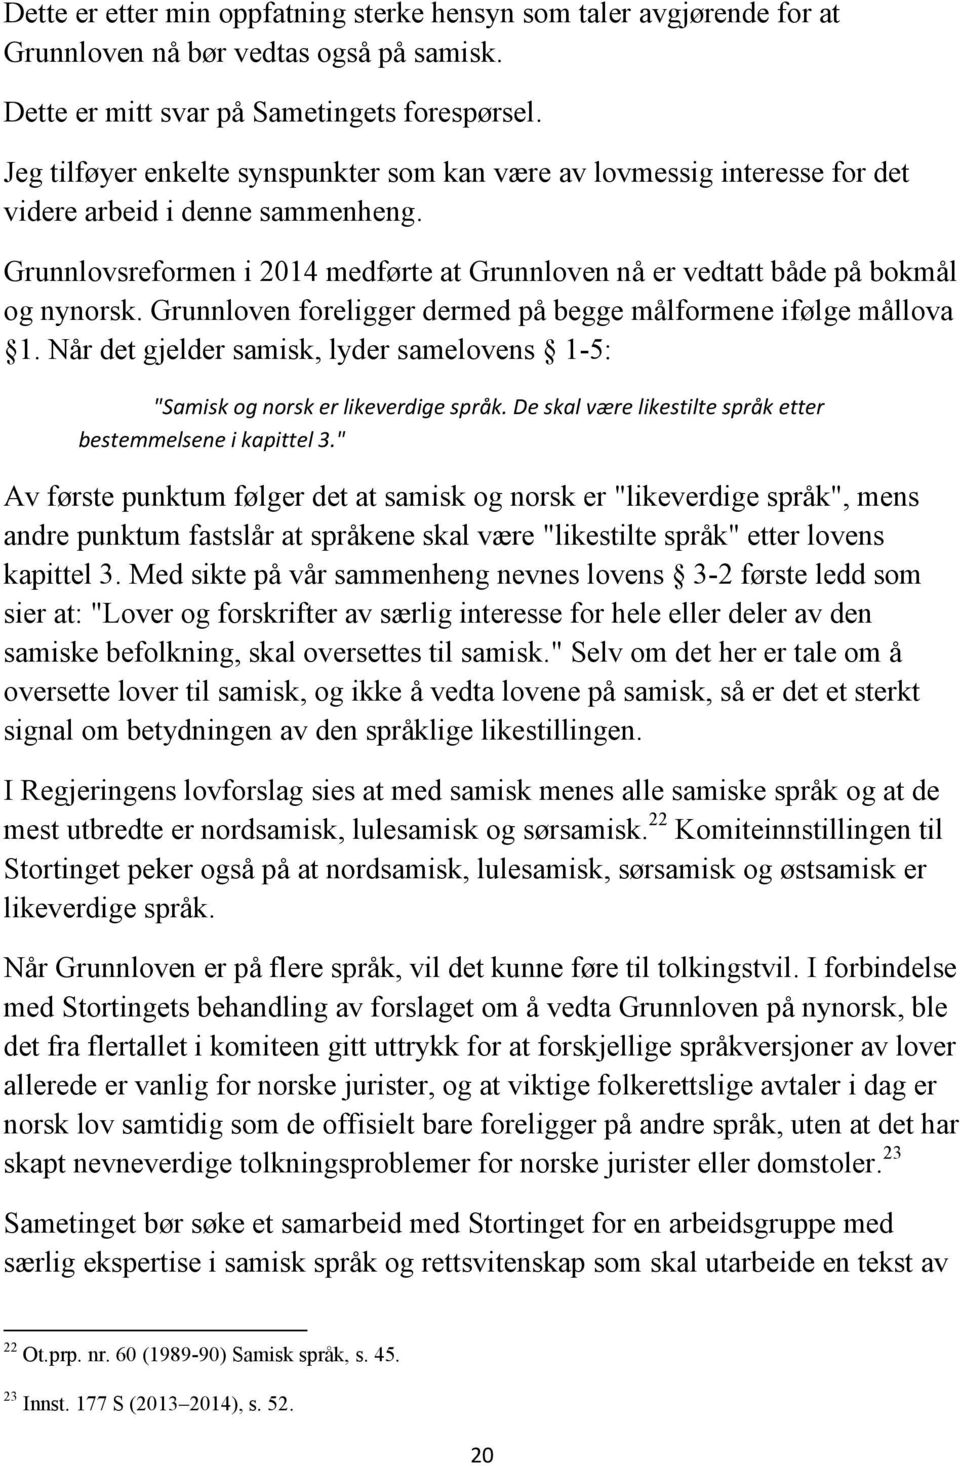 Grunnloven foreligger dermed på begge målformene ifølge mållova 1. Når det gjelder samisk, lyder samelovens 1-5: "Samisk og norsk er likeverdige språk.